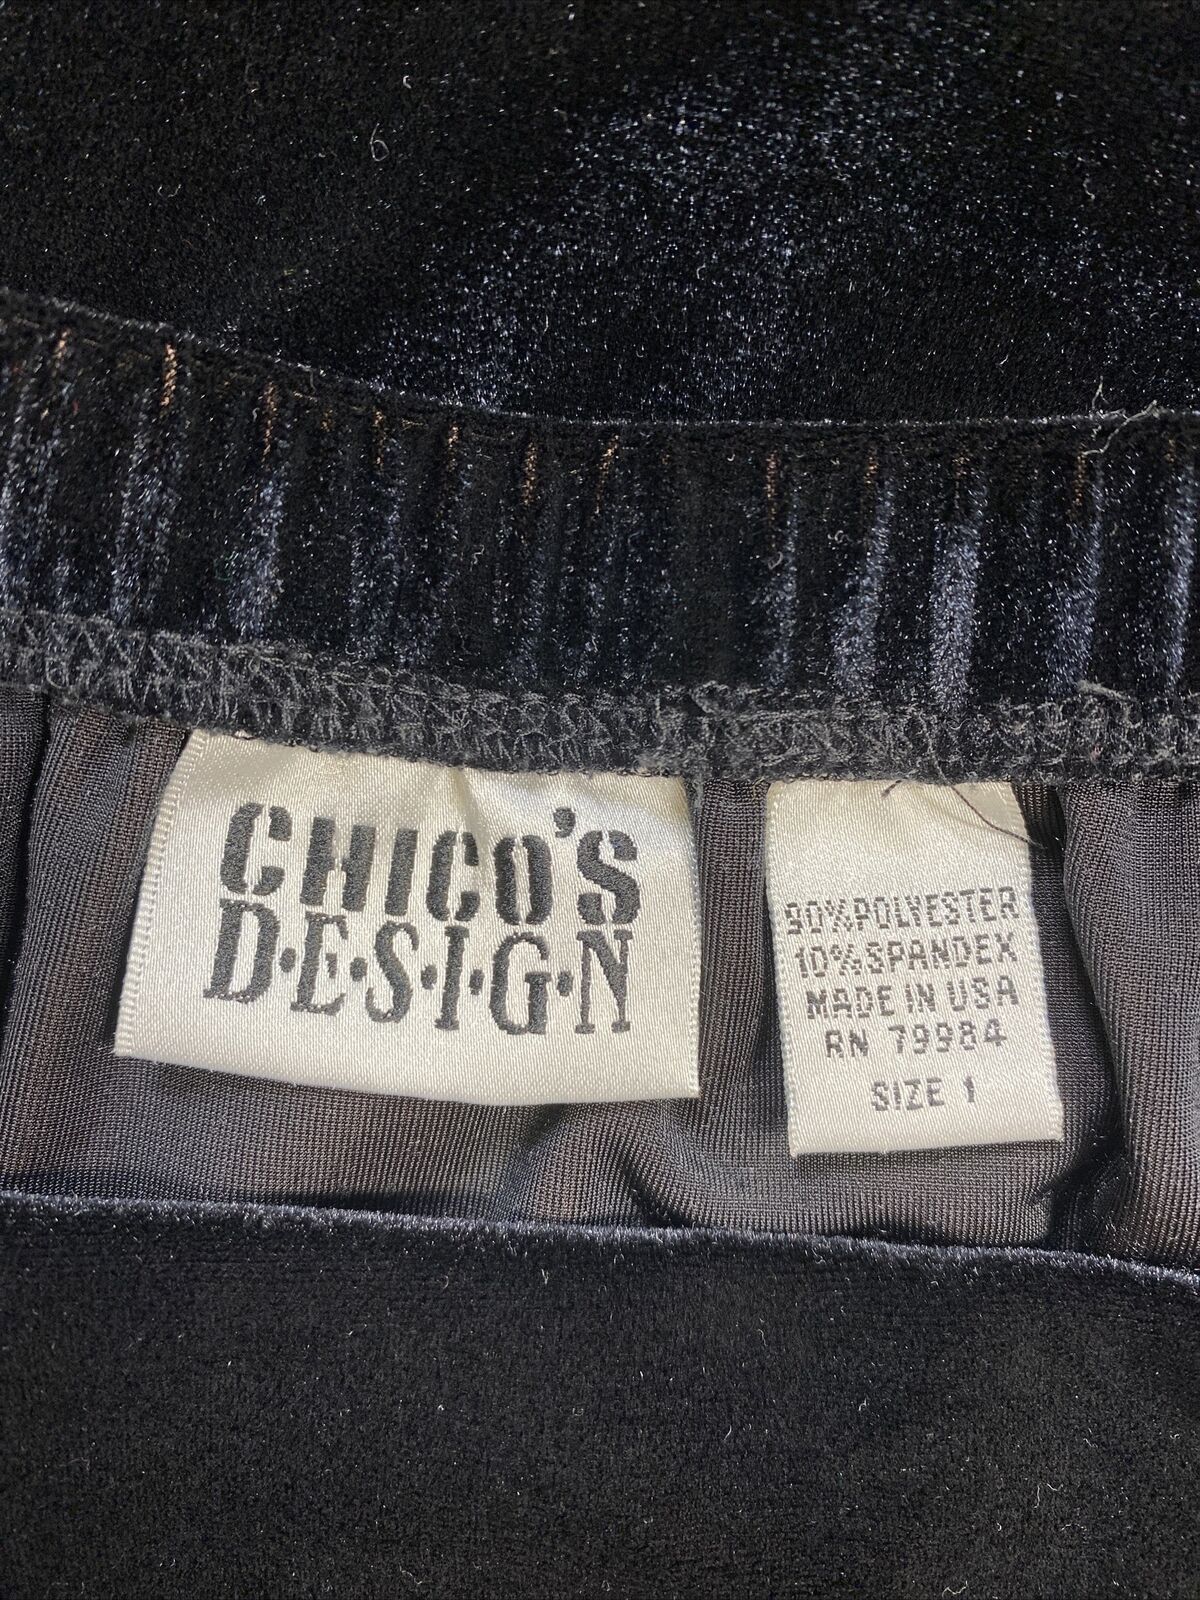 Chico's Women's Black Velour Long Straight Maxi Skirt - 1 US M